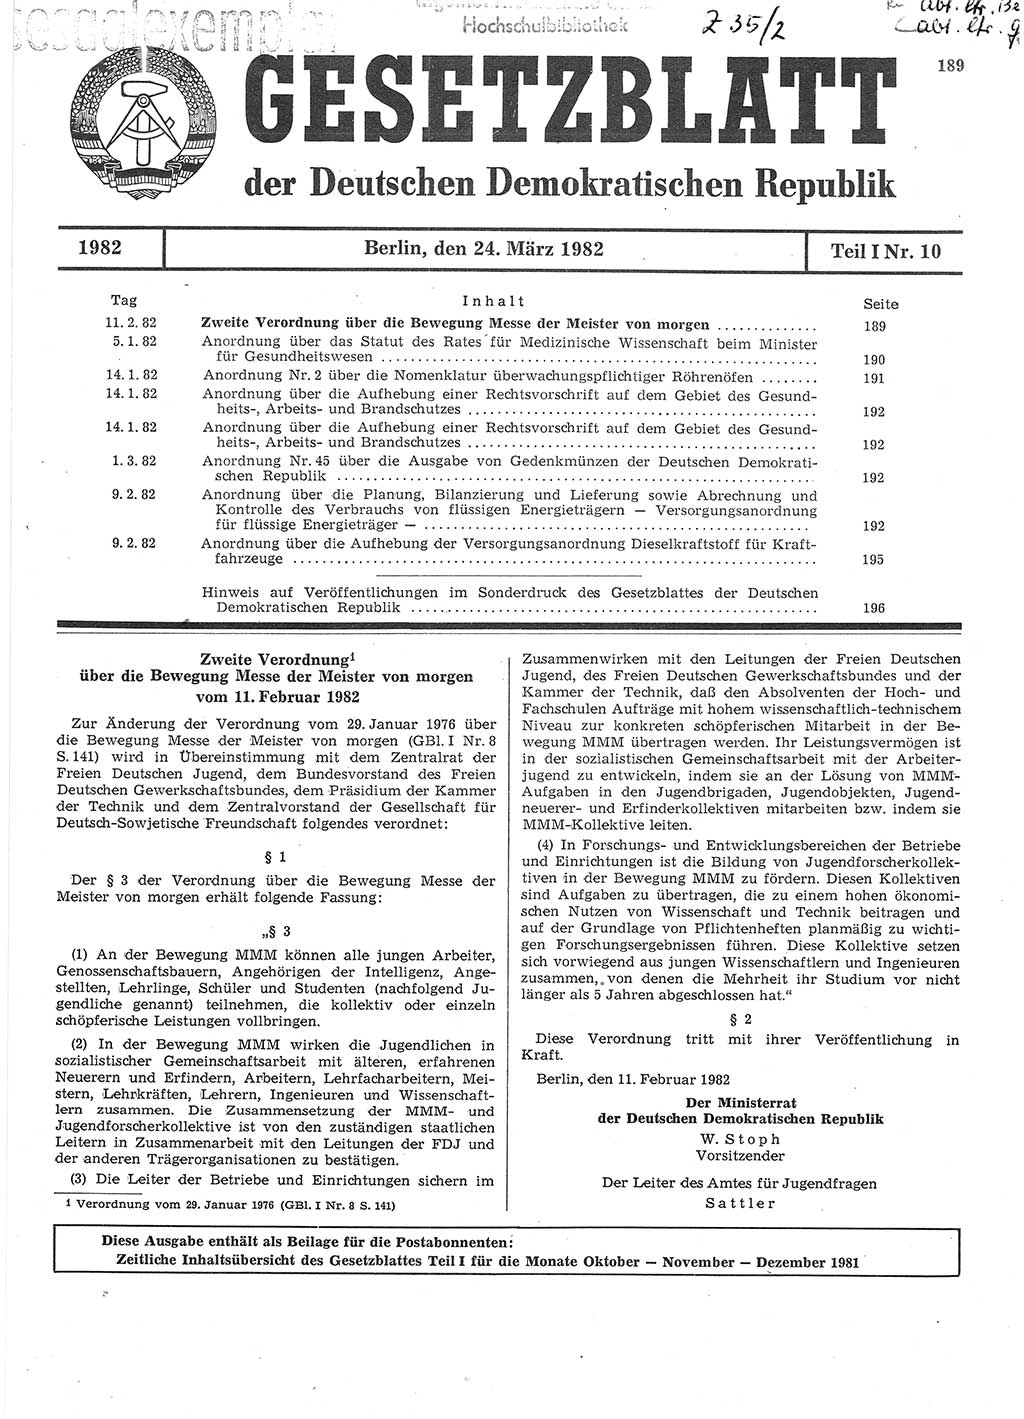 Gesetzblatt (GBl.) der Deutschen Demokratischen Republik (DDR) Teil Ⅰ 1982, Seite 189 (GBl. DDR Ⅰ 1982, S. 189)